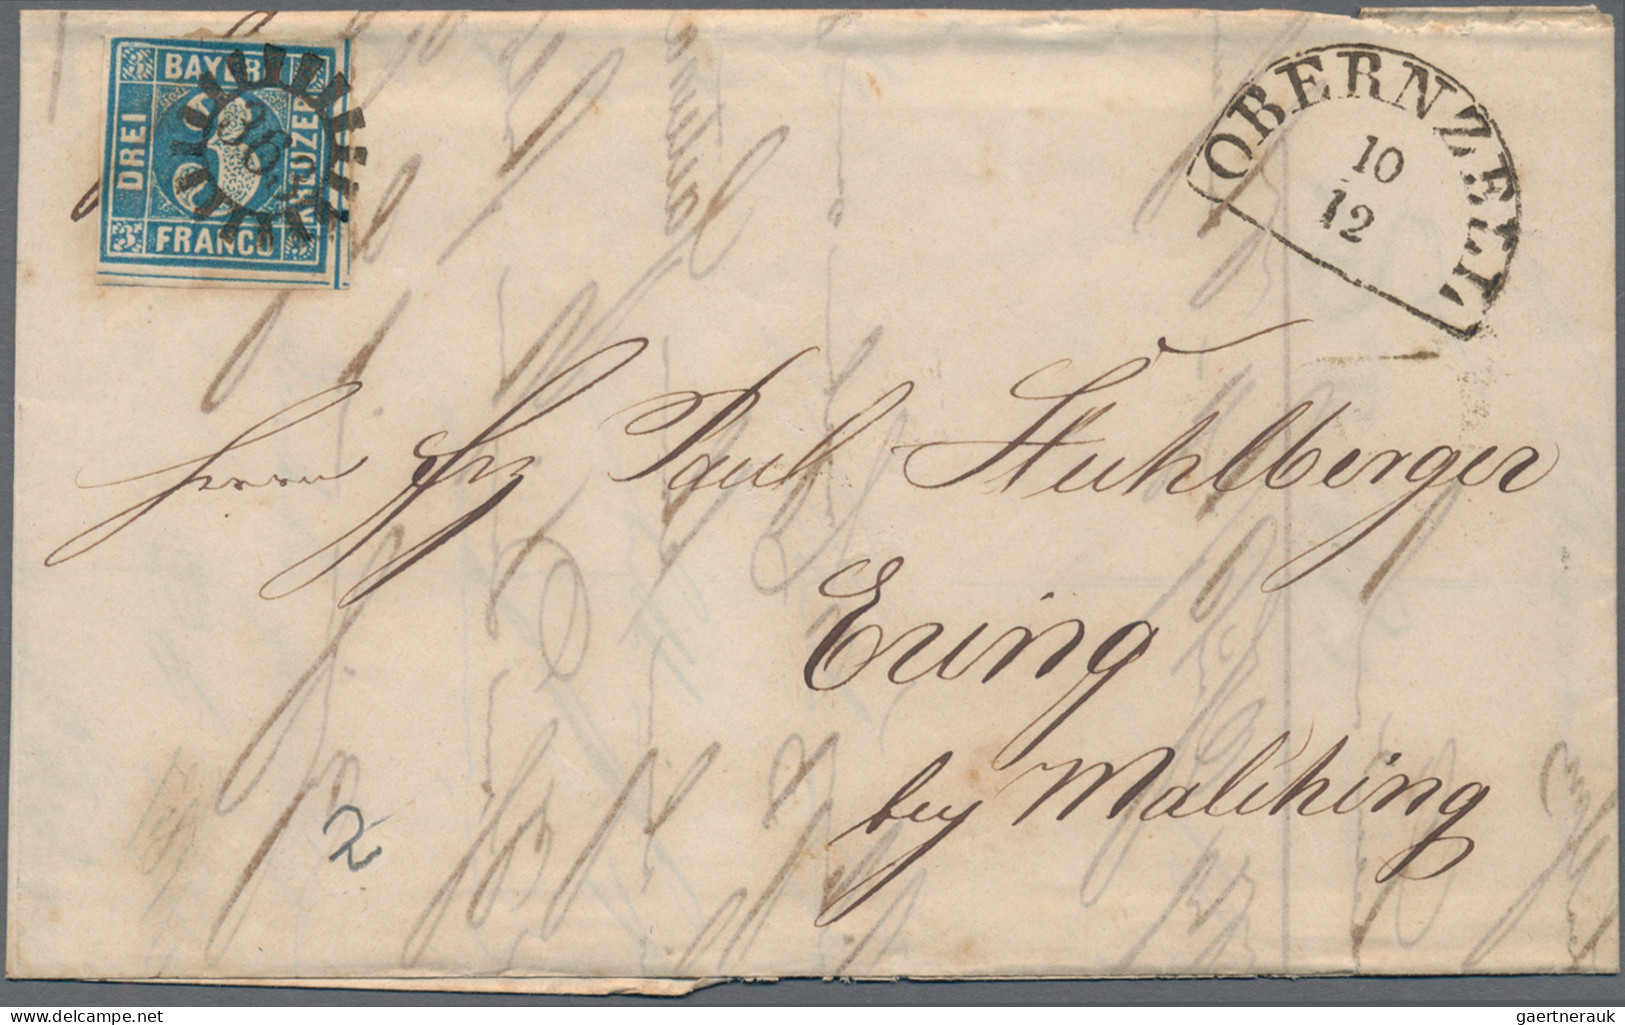 Bayern - Marken und Briefe: 1851/1860 (ca.), 3 Kr. blau (MiNr. 2 II), Partie von